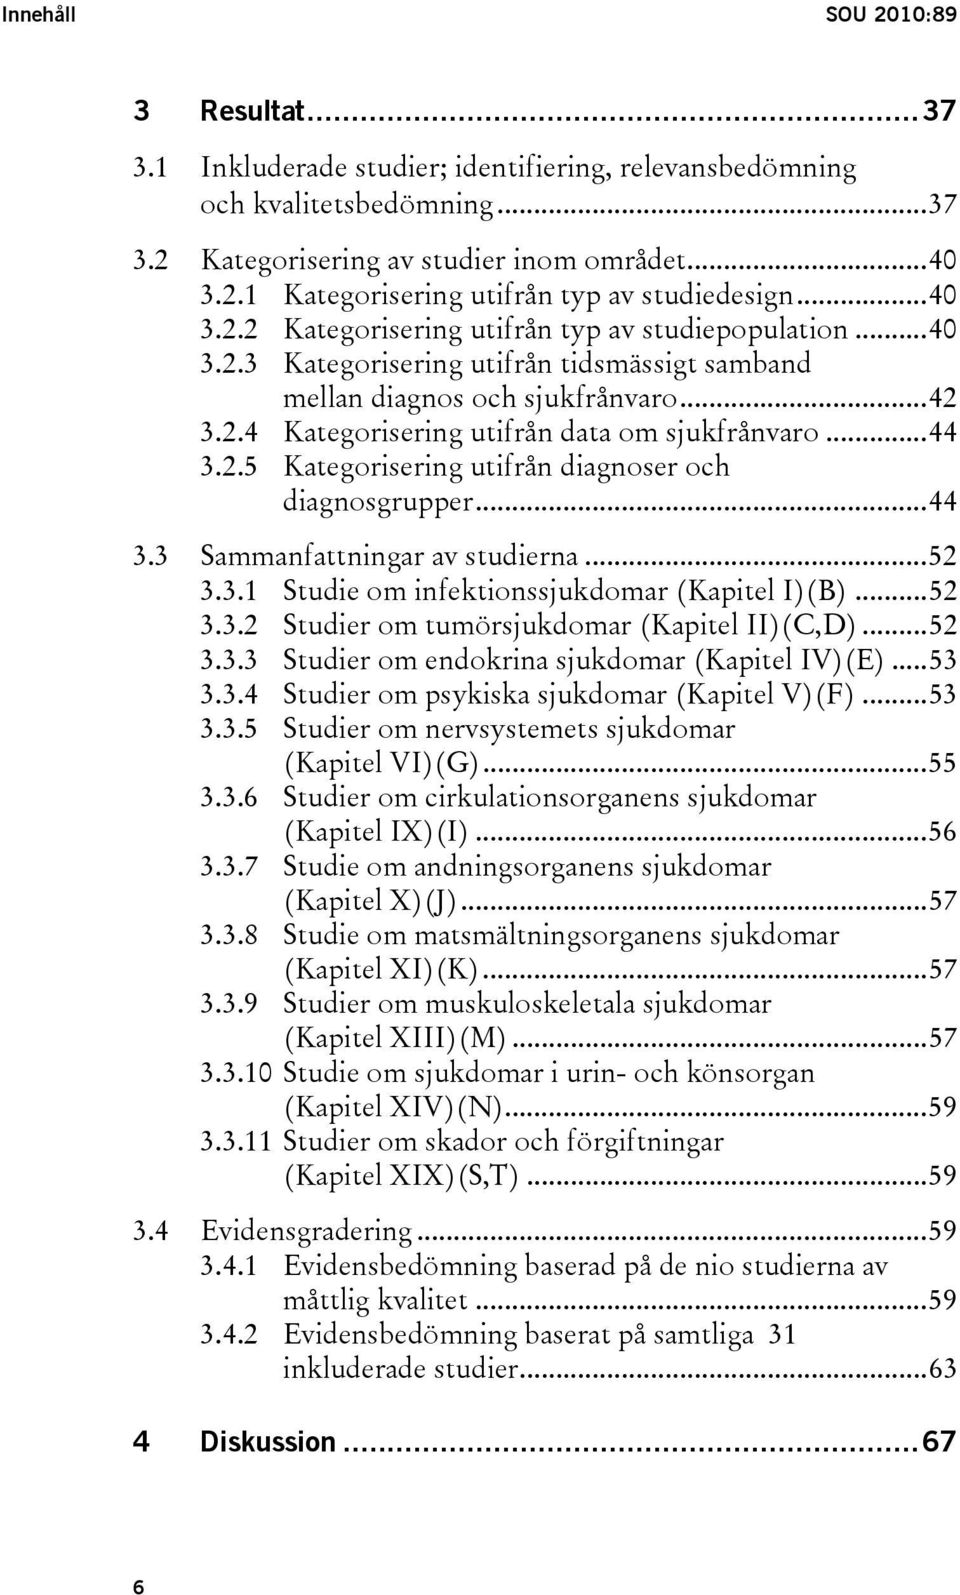 ..44 3.2.5 Kategorisering utifrån diagnoser och diagnosgrupper...44 3.3 Sammanfattningar av studierna...52 3.3.1 Studie om infektionssjukdomar (Kapitel I)(B)...52 3.3.2 Studier om tumörsjukdomar (Kapitel II)(C,D).